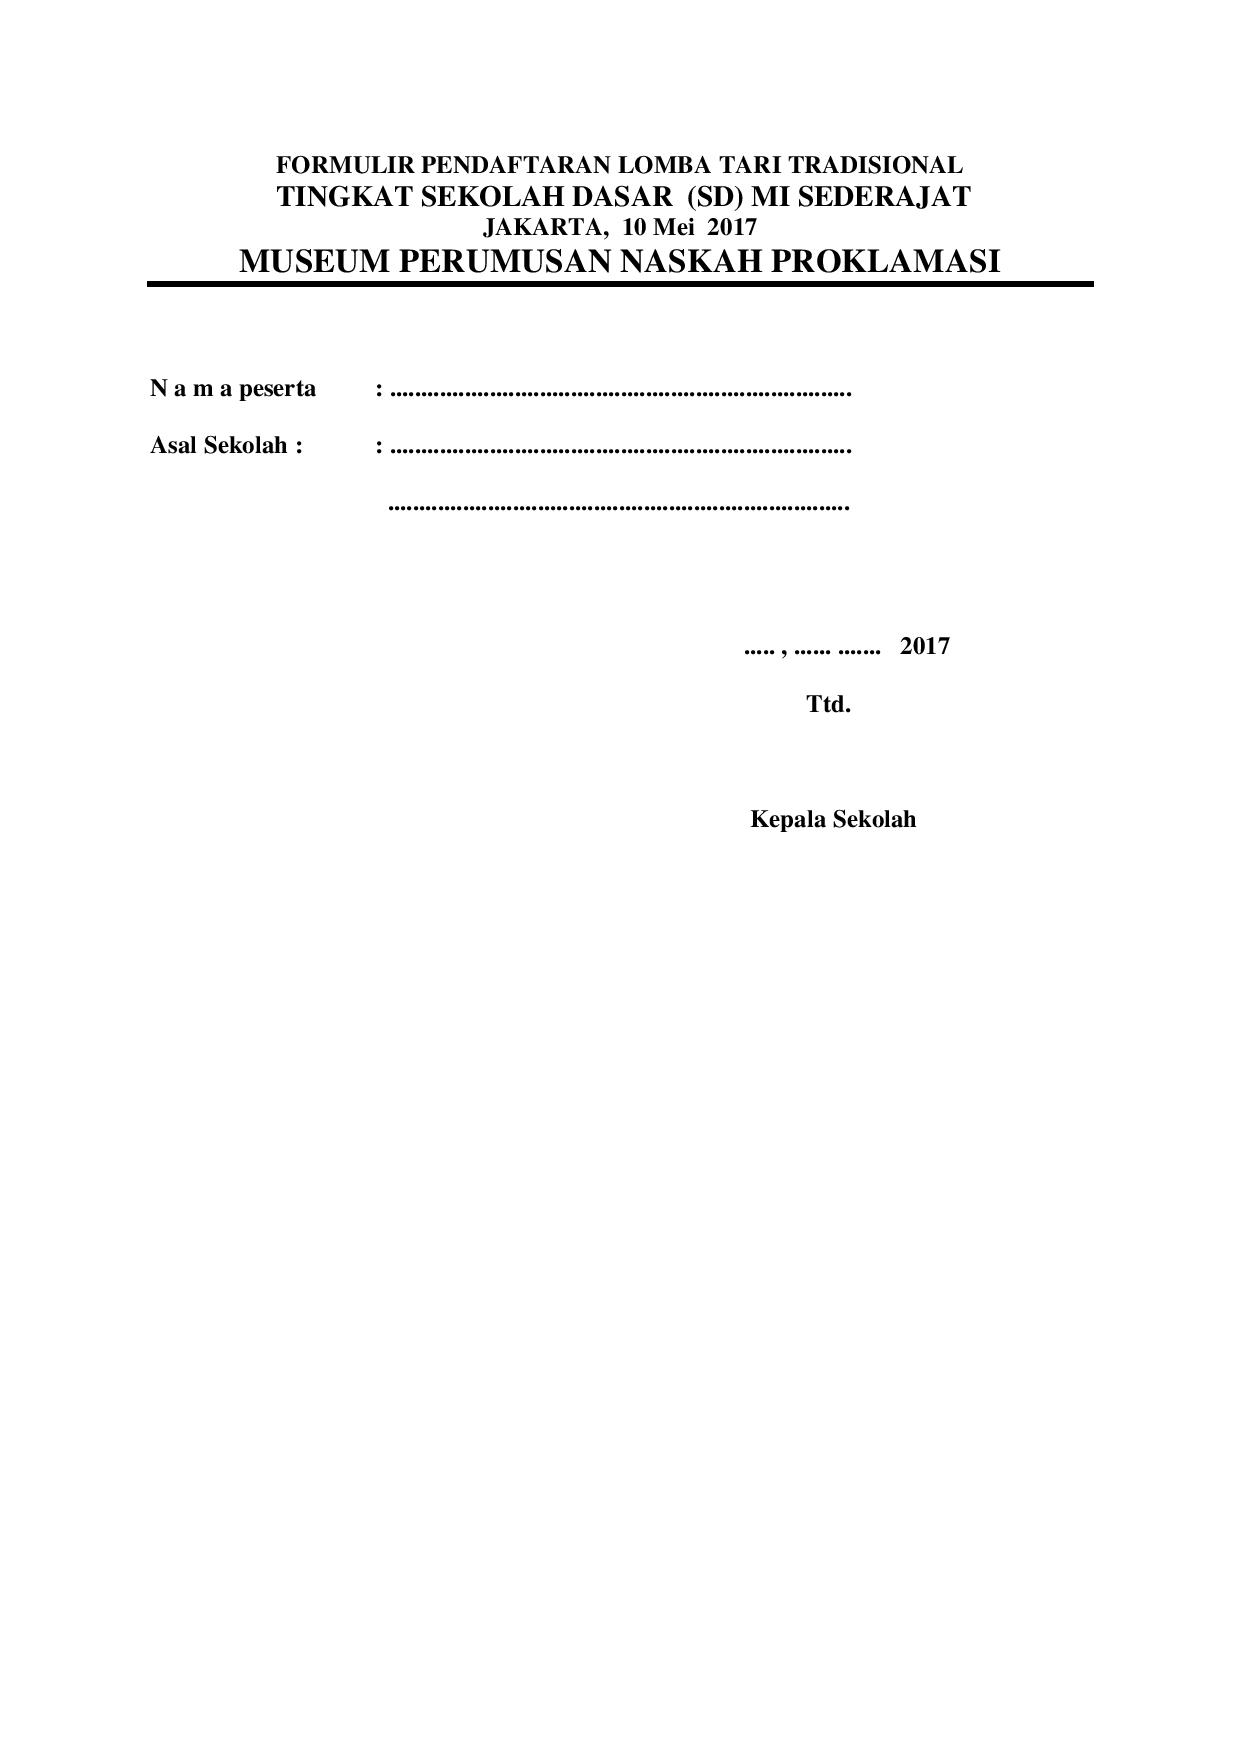 Detail Contoh Formulir Pendaftaran Masuk Sekolah Dasar Nomer 41